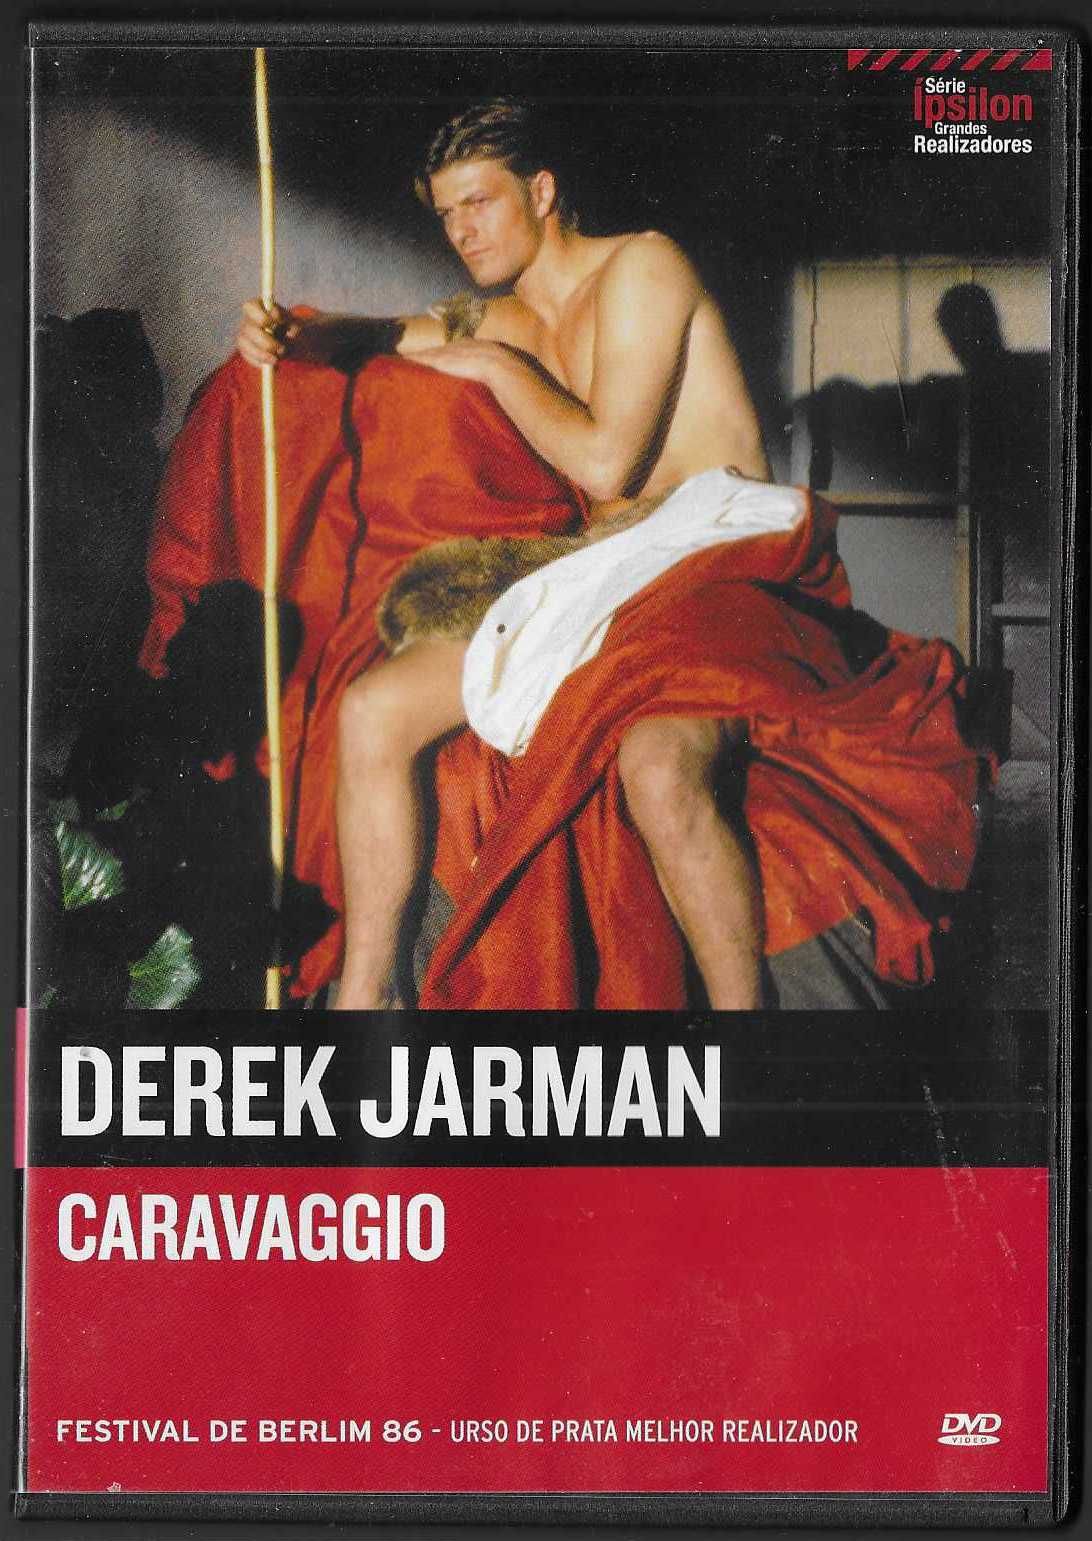 Derek Jarman. Caravaggio.